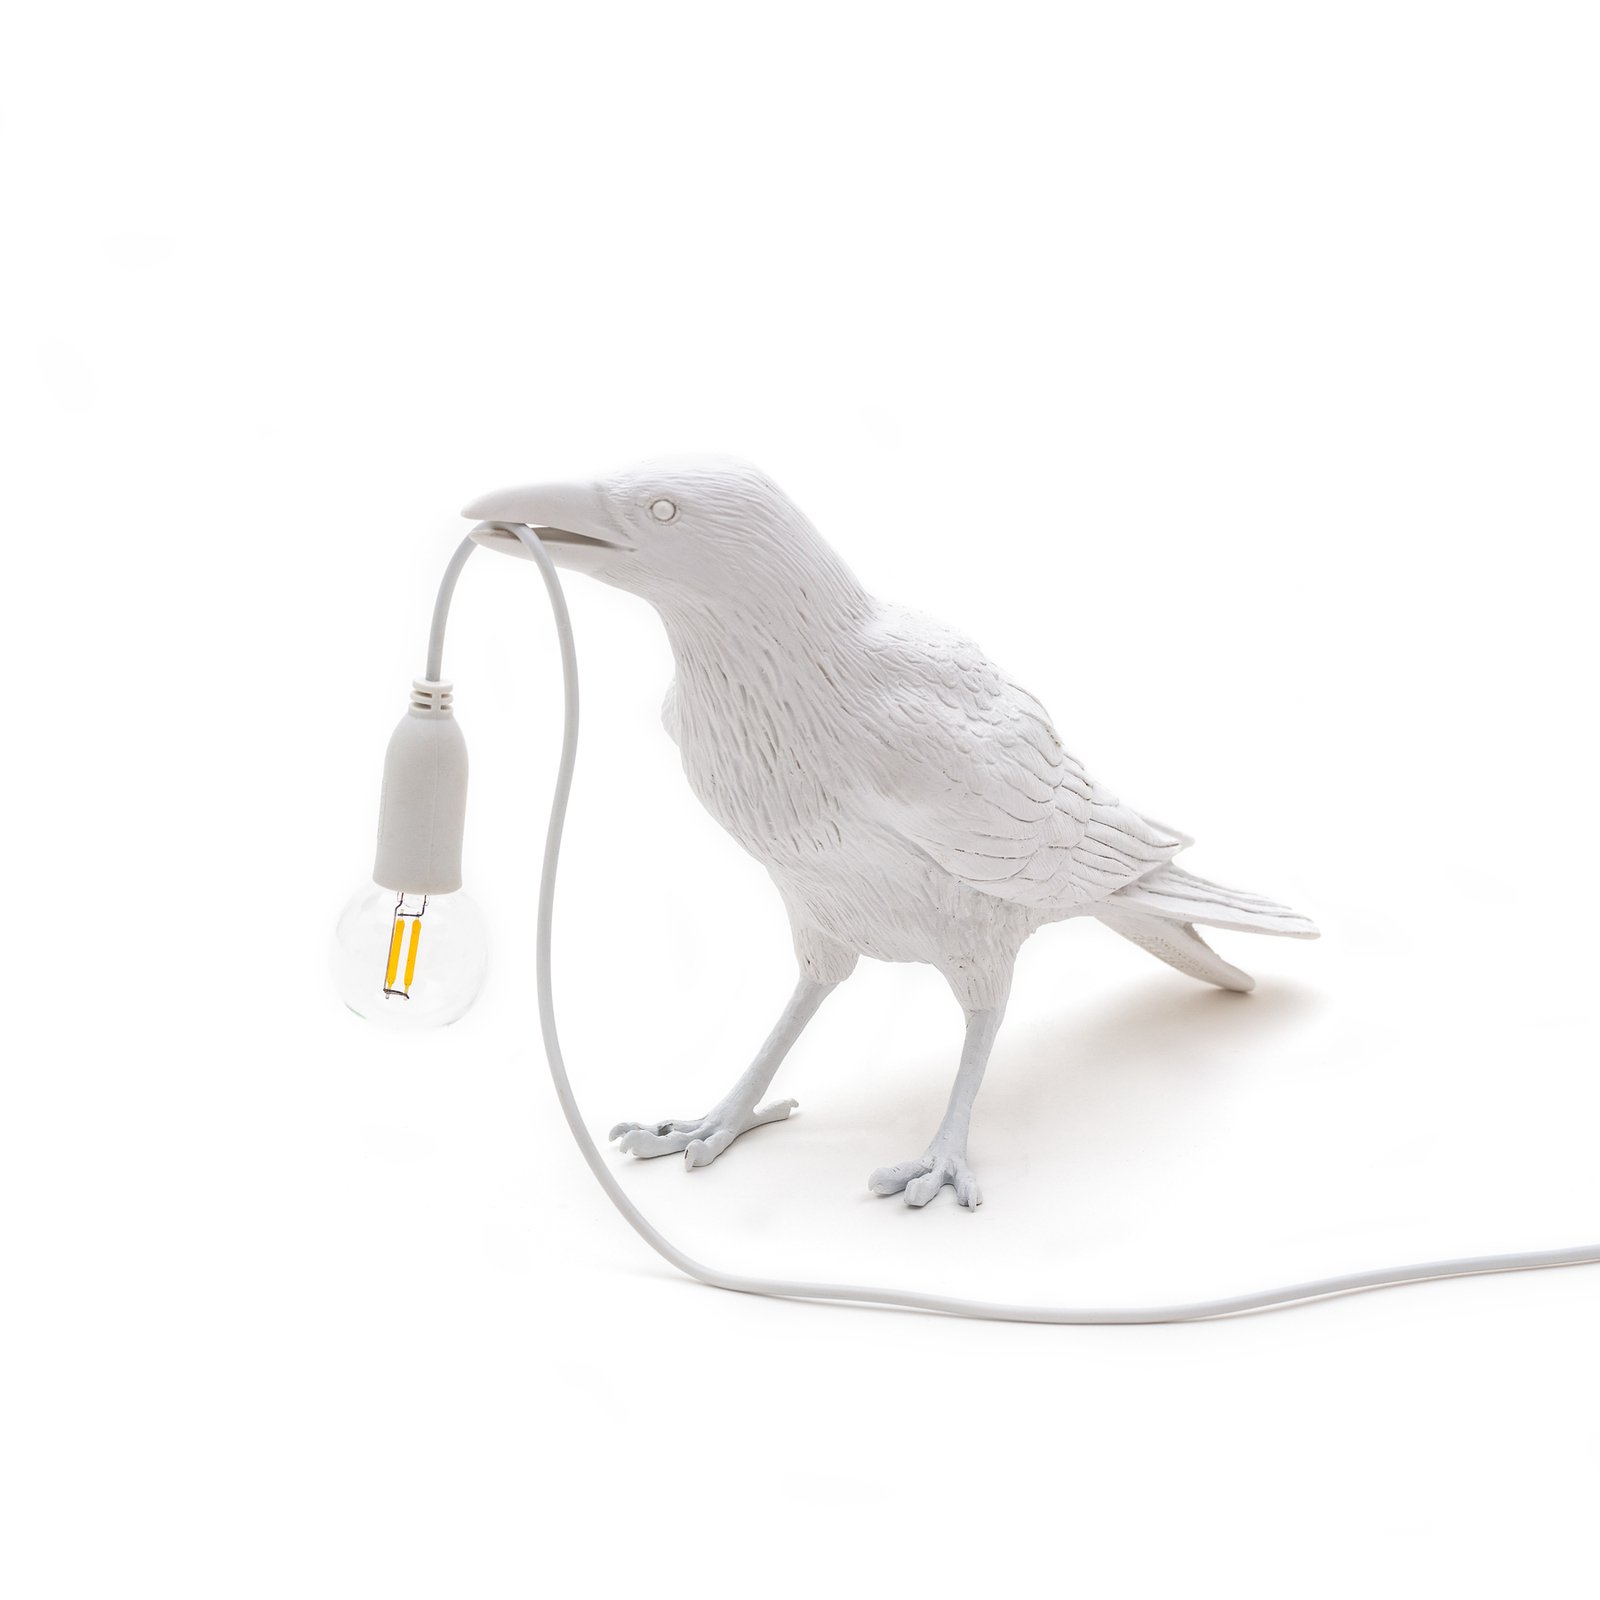 LED dekorbordslampa Bird Lamp, väntande, vit